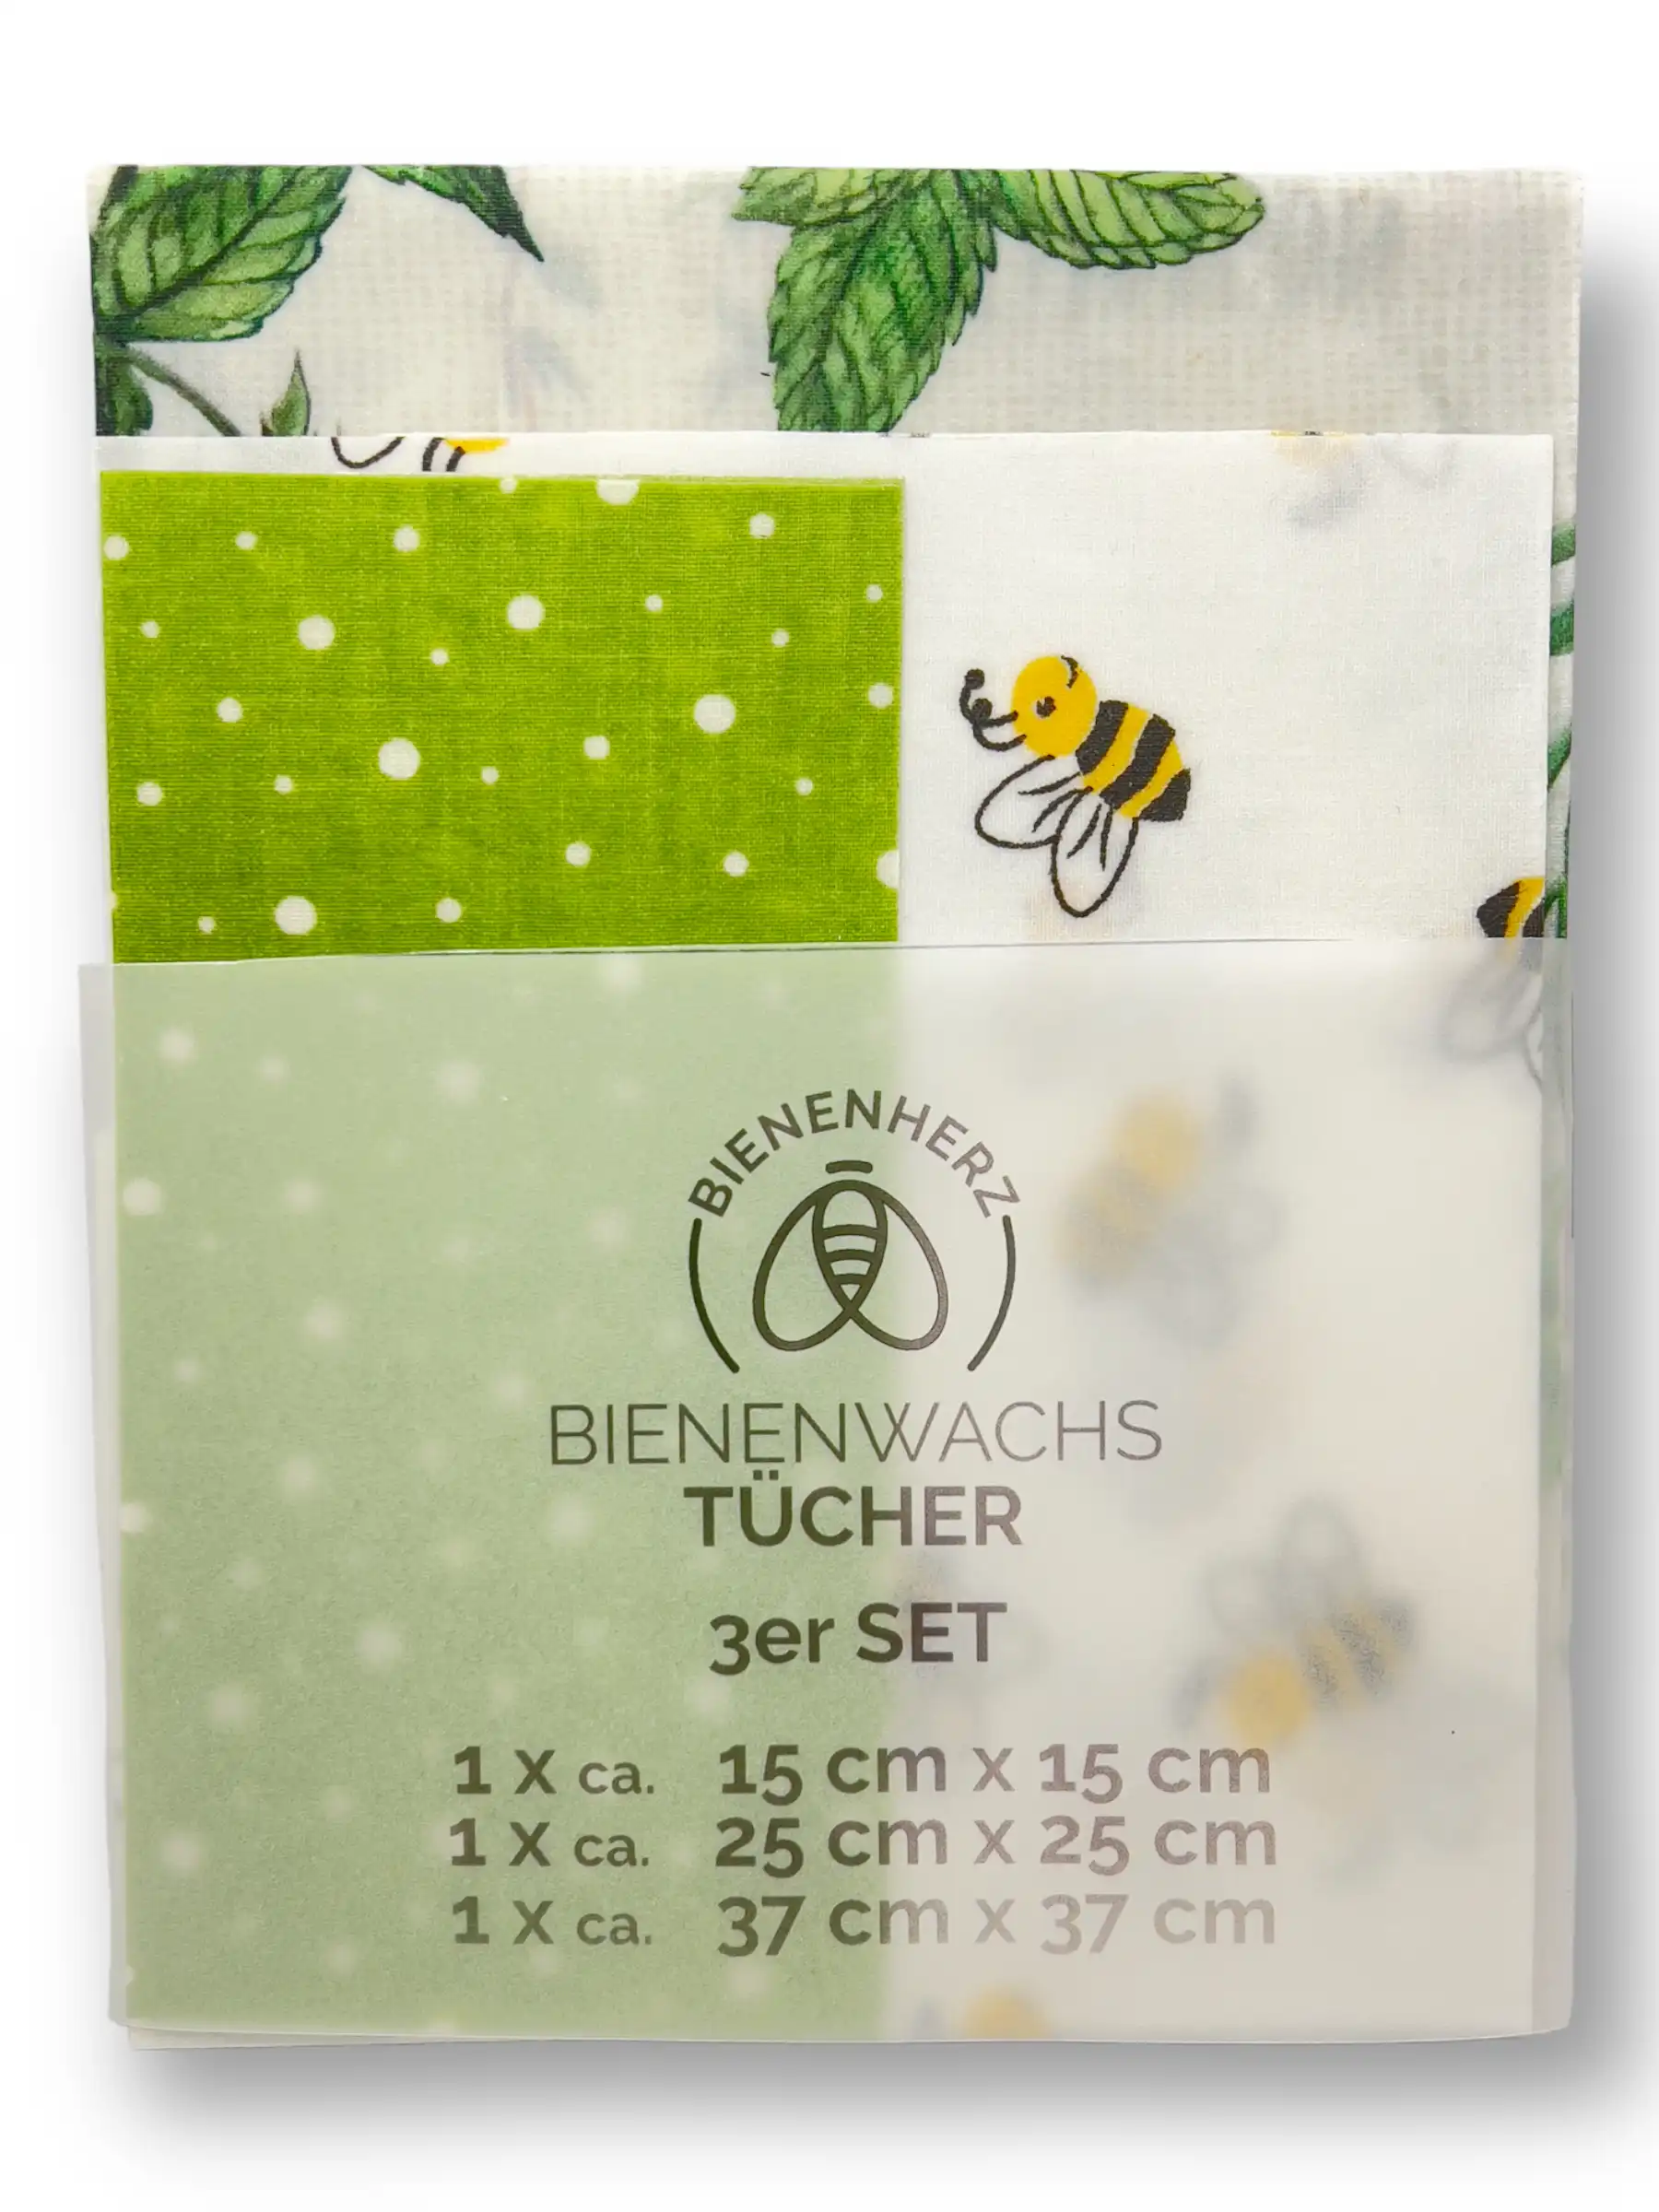 hübsch kombiniertes Set von 3 Bienenwachstüchern in grün